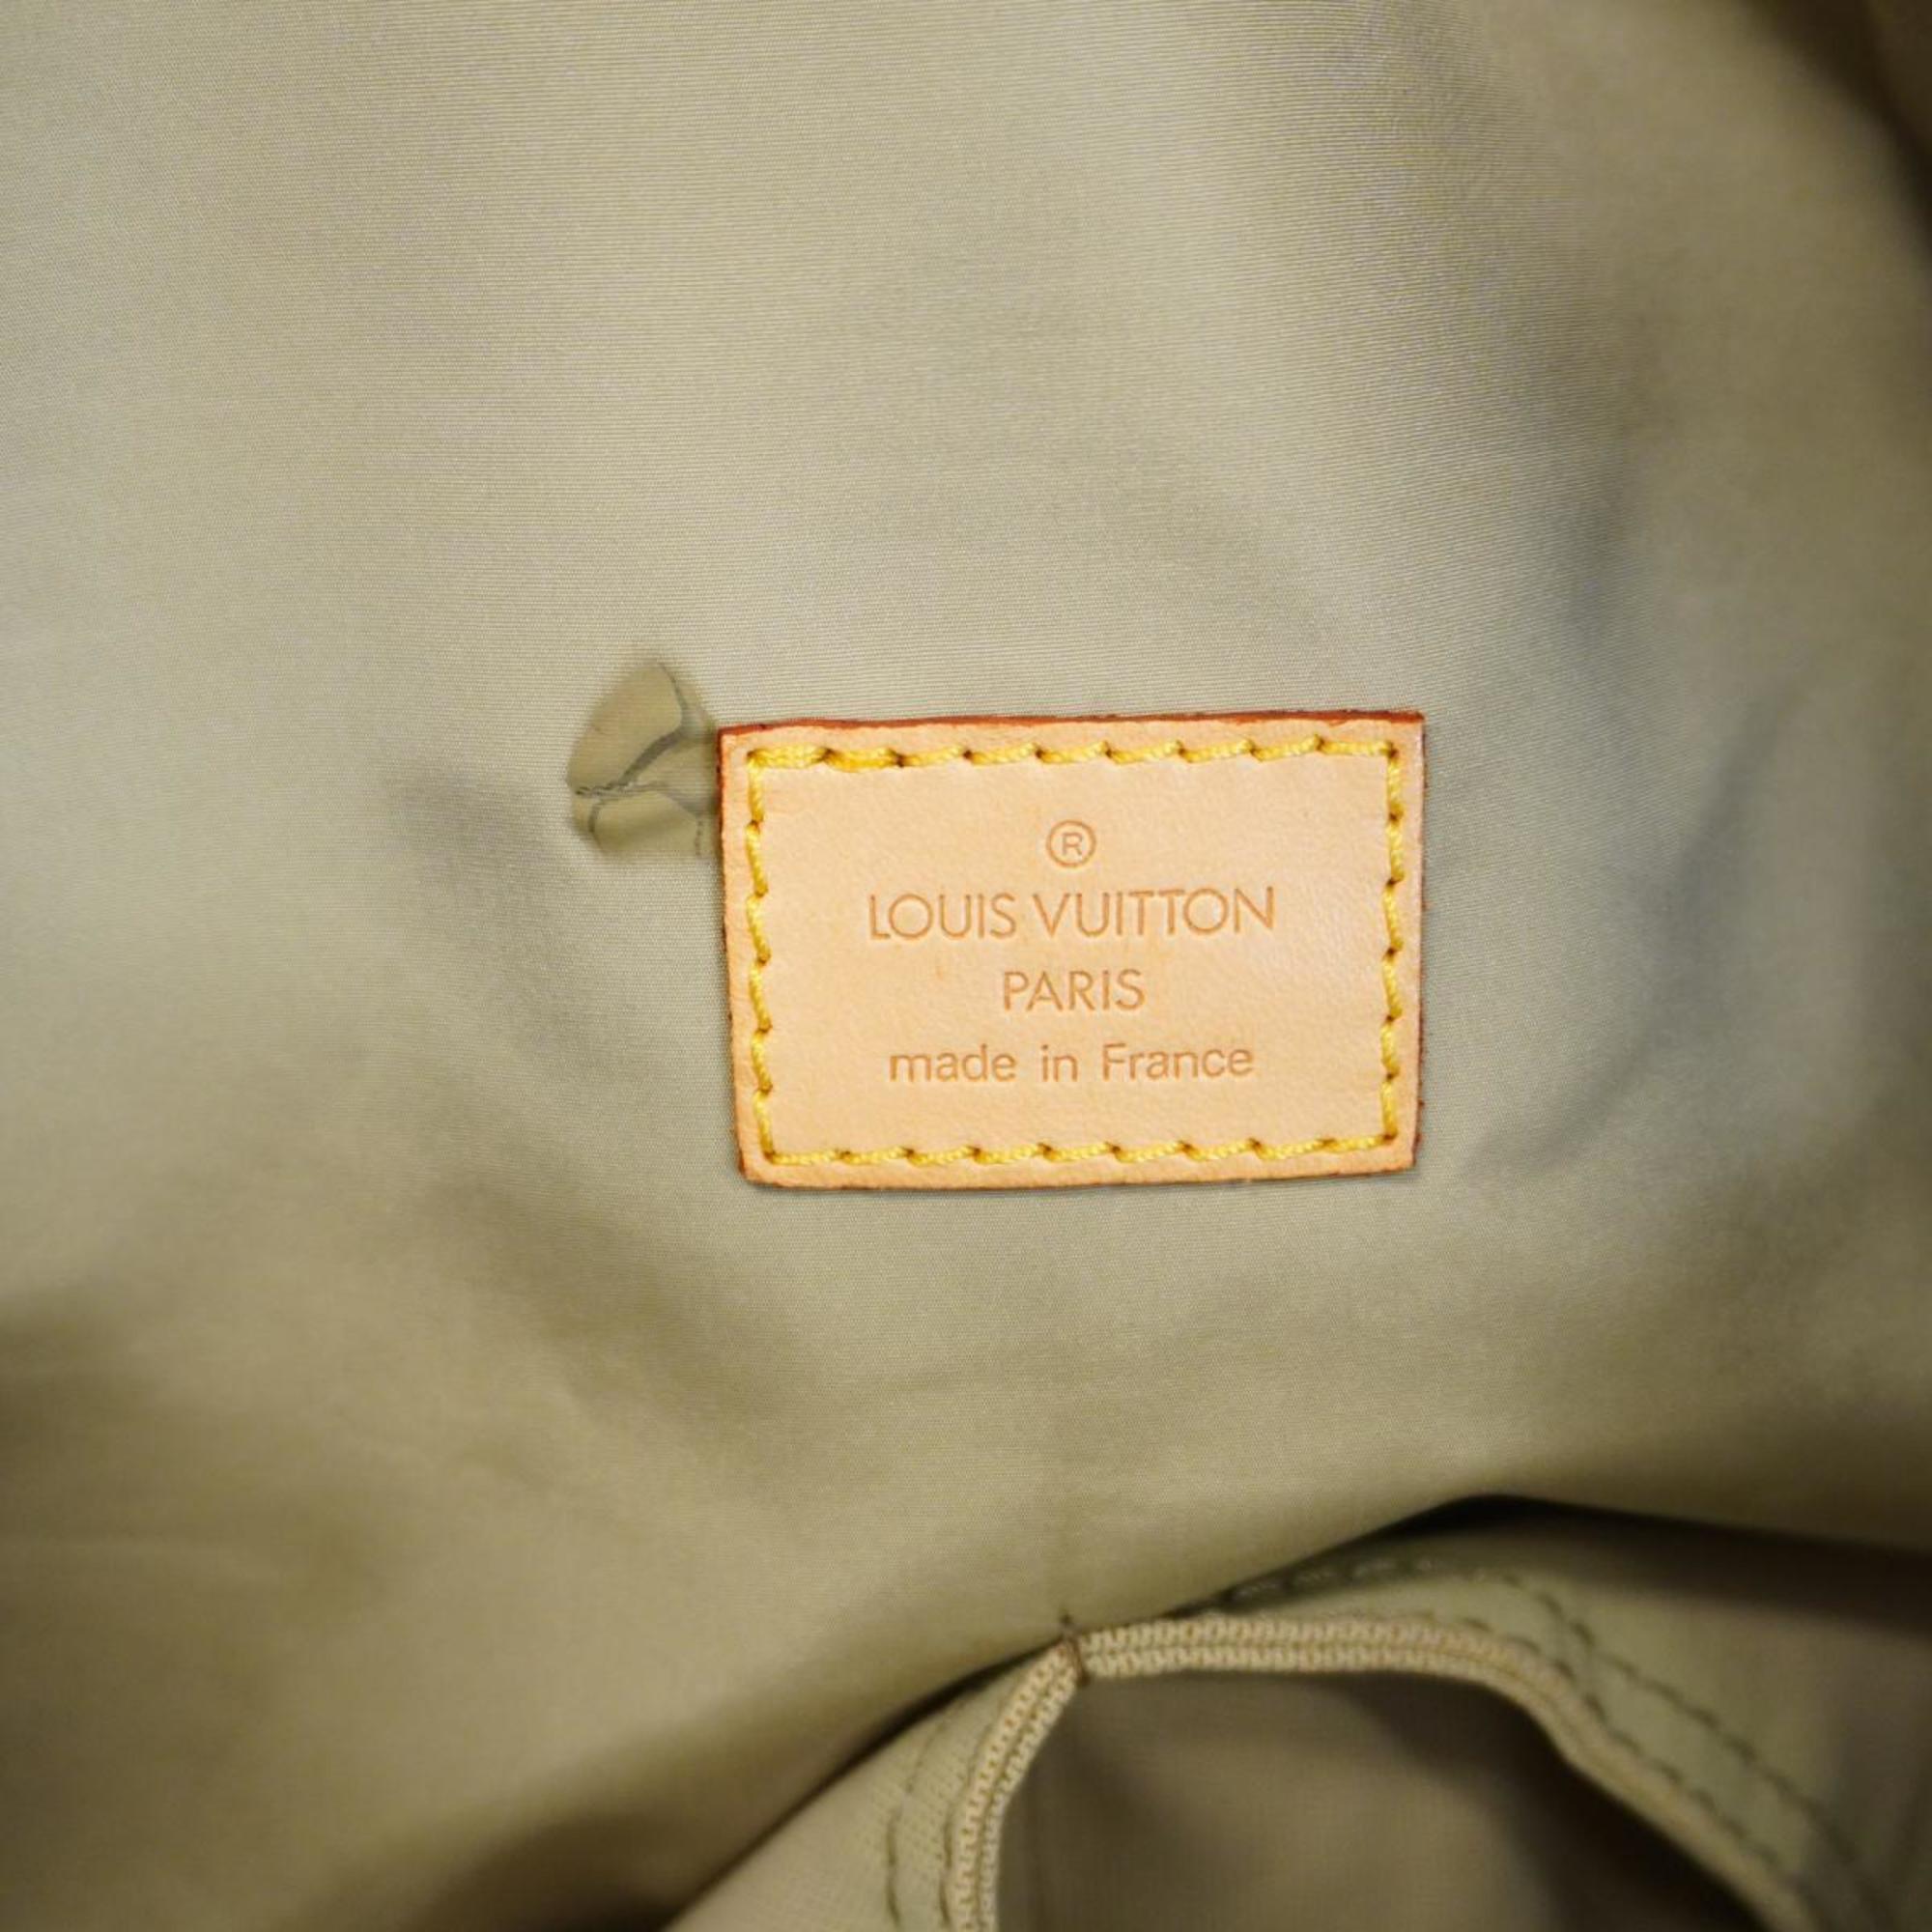 ルイ・ヴィトン(Louis Vuitton) ルイ・ヴィトン ボストンバッグ ダミエ・ジェアン スヴラン M93015 テールメンズ レディース